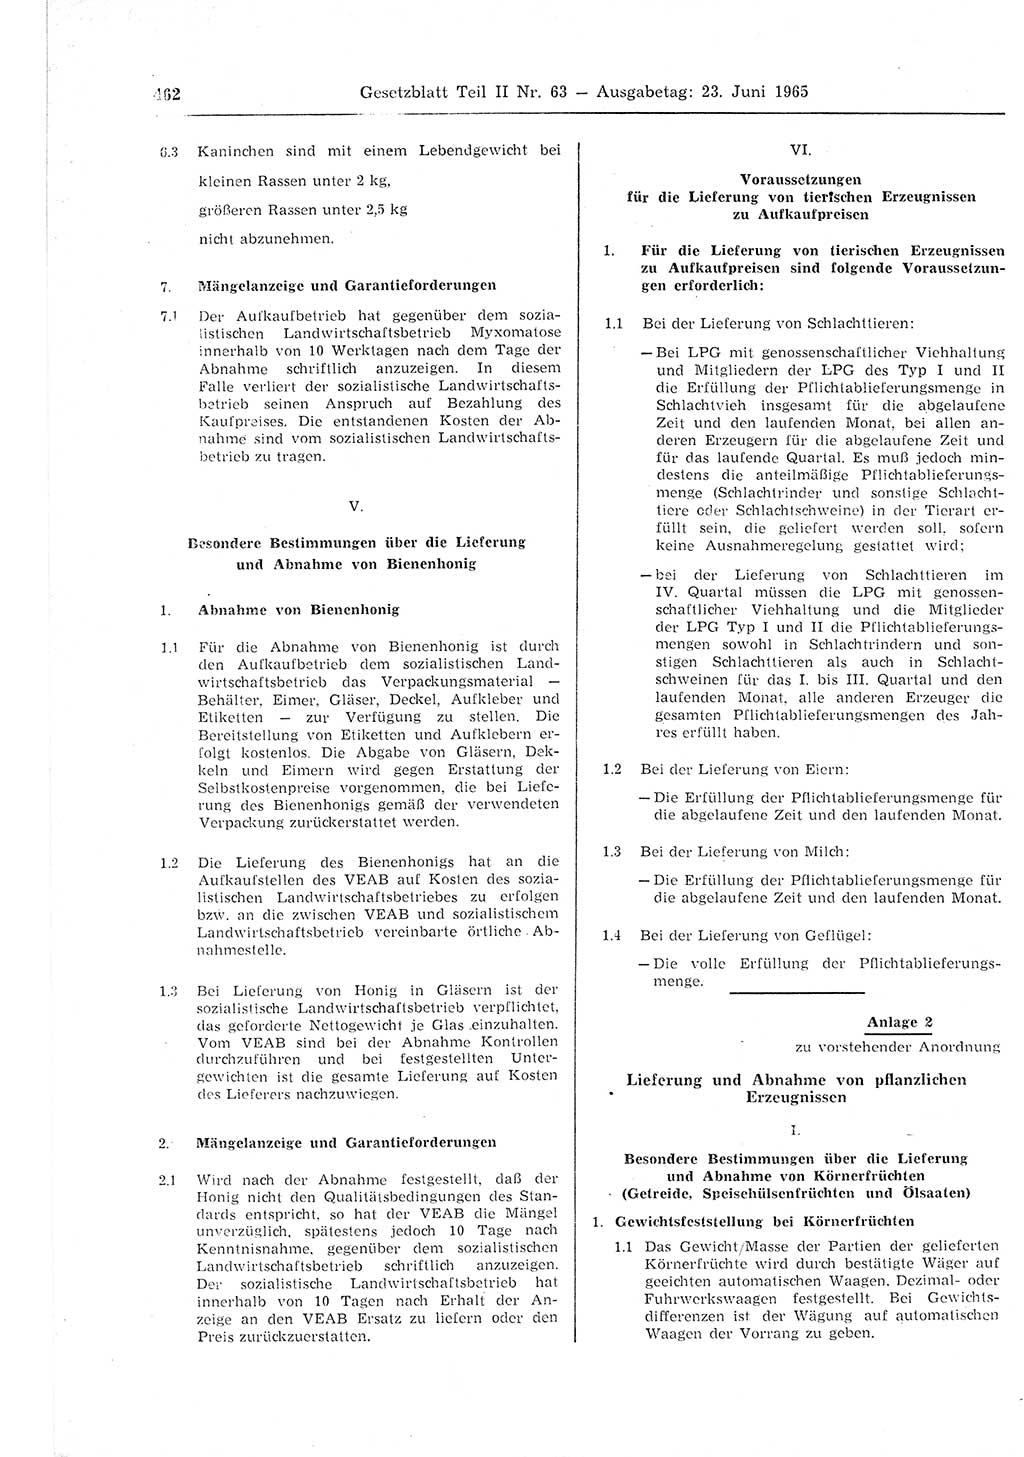 Gesetzblatt (GBl.) der Deutschen Demokratischen Republik (DDR) Teil ⅠⅠ 1965, Seite 462 (GBl. DDR ⅠⅠ 1965, S. 462)